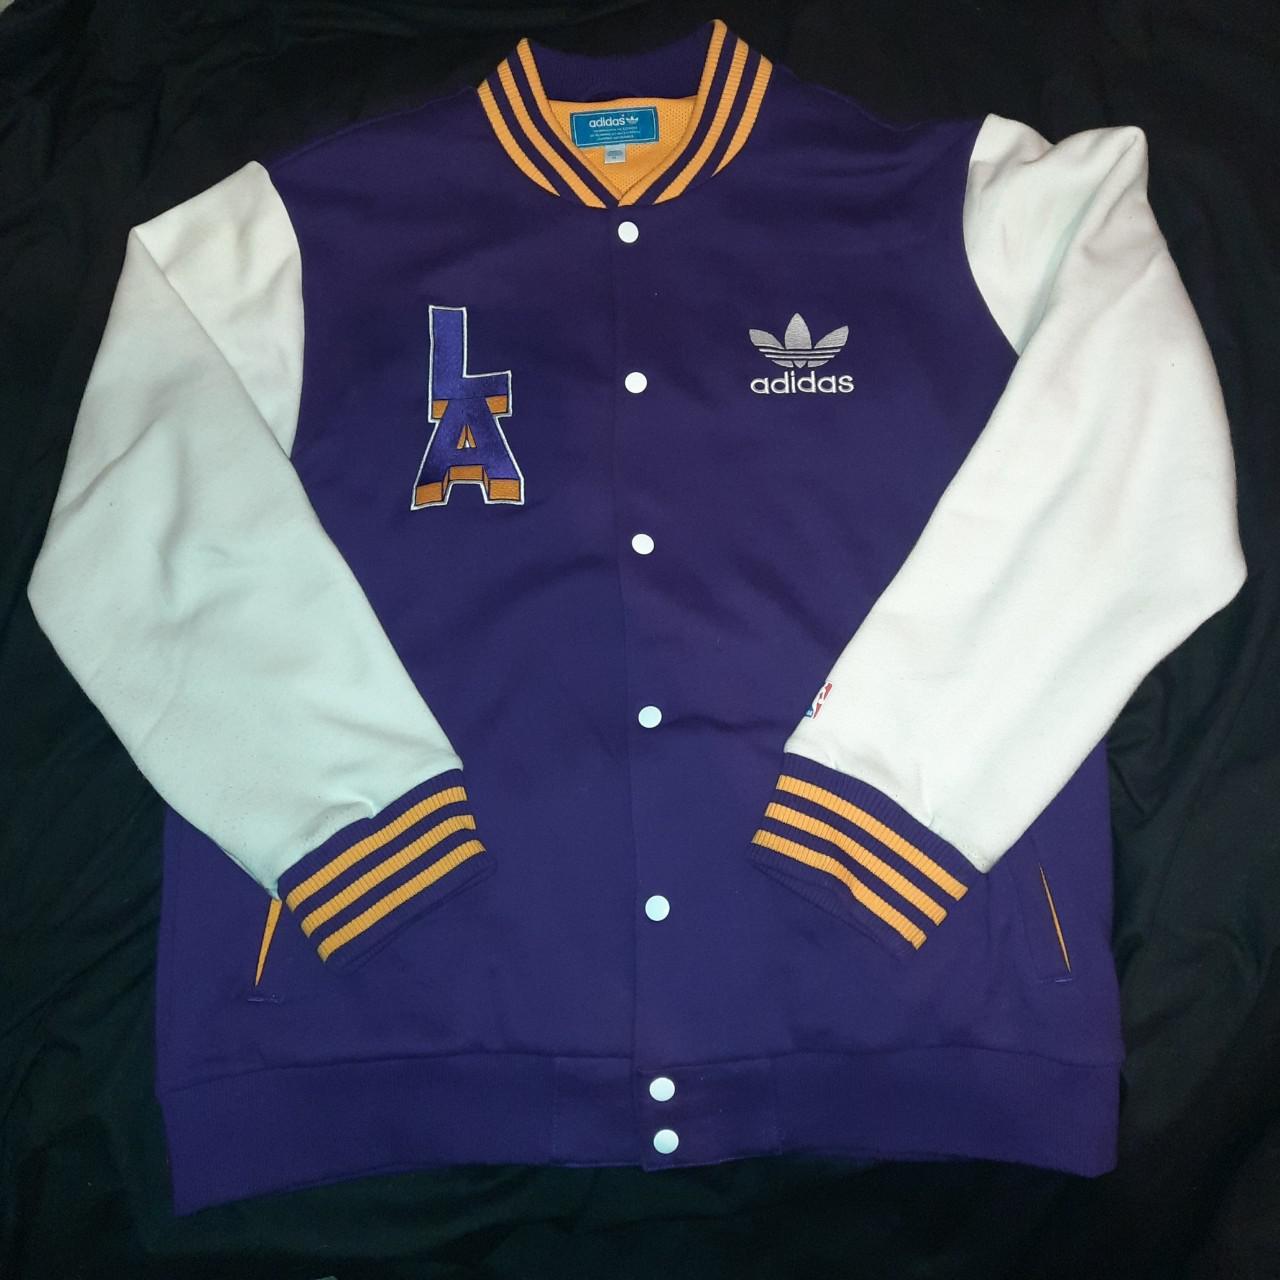 Adidas LA Lakers Reversible Jacket/Fits Like a Men’s